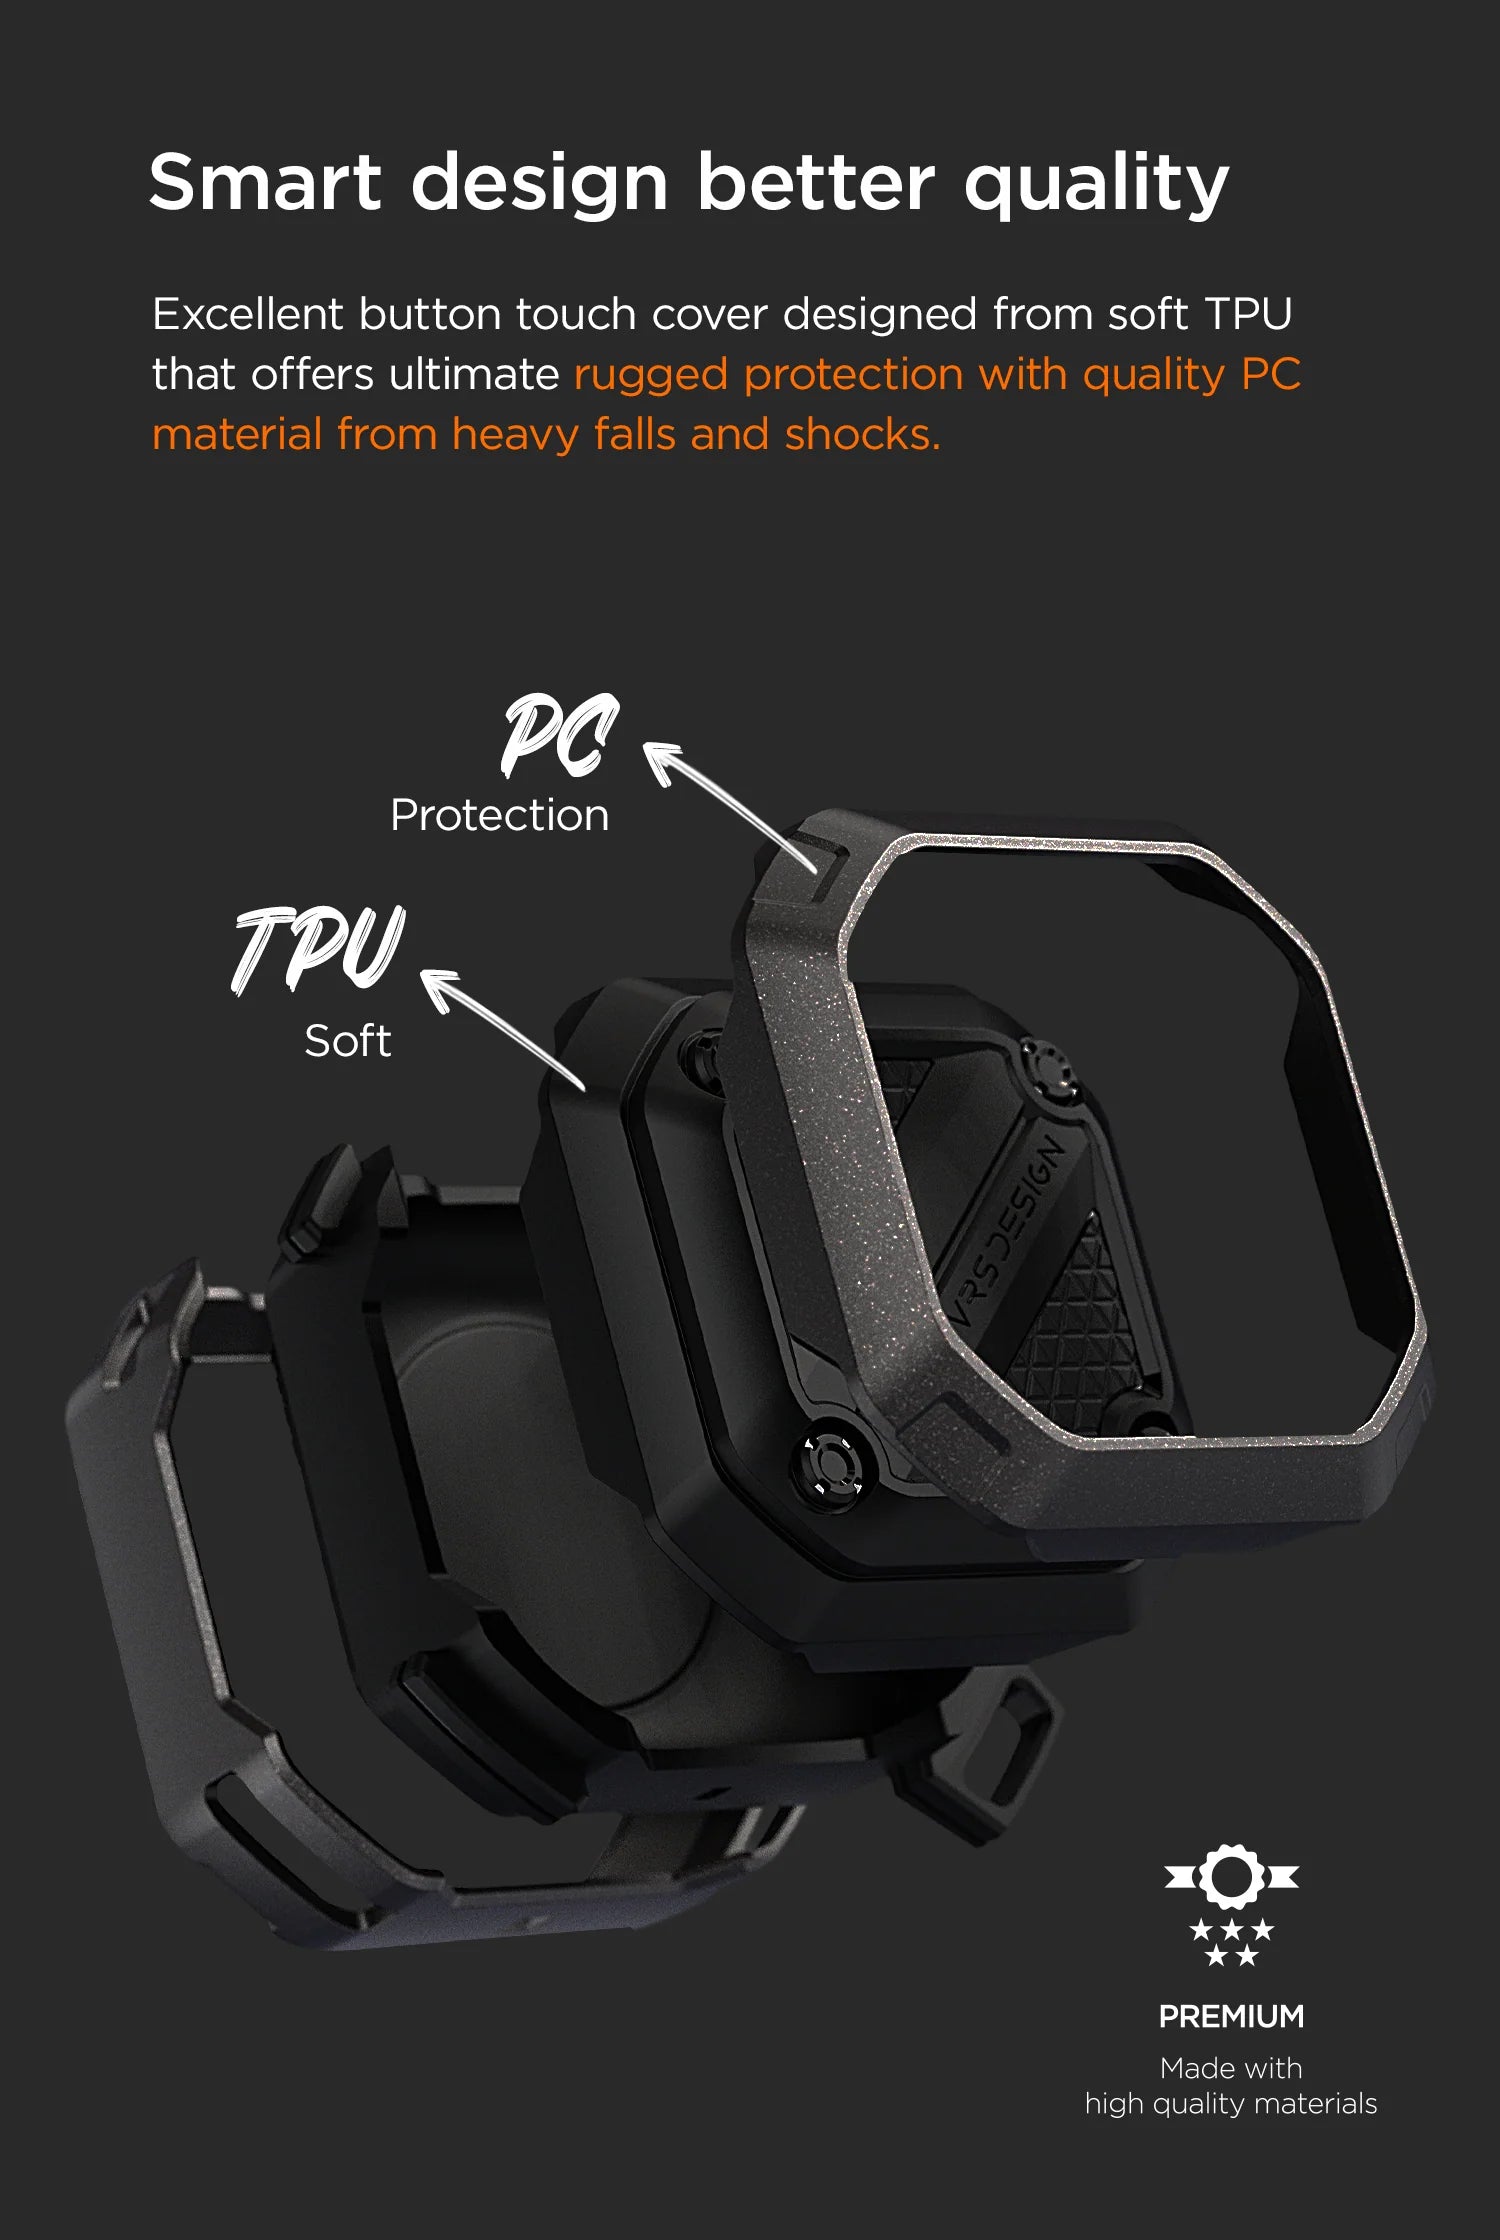 Galaxy Buds2 Pro / Buds Pro Case – VRS Design